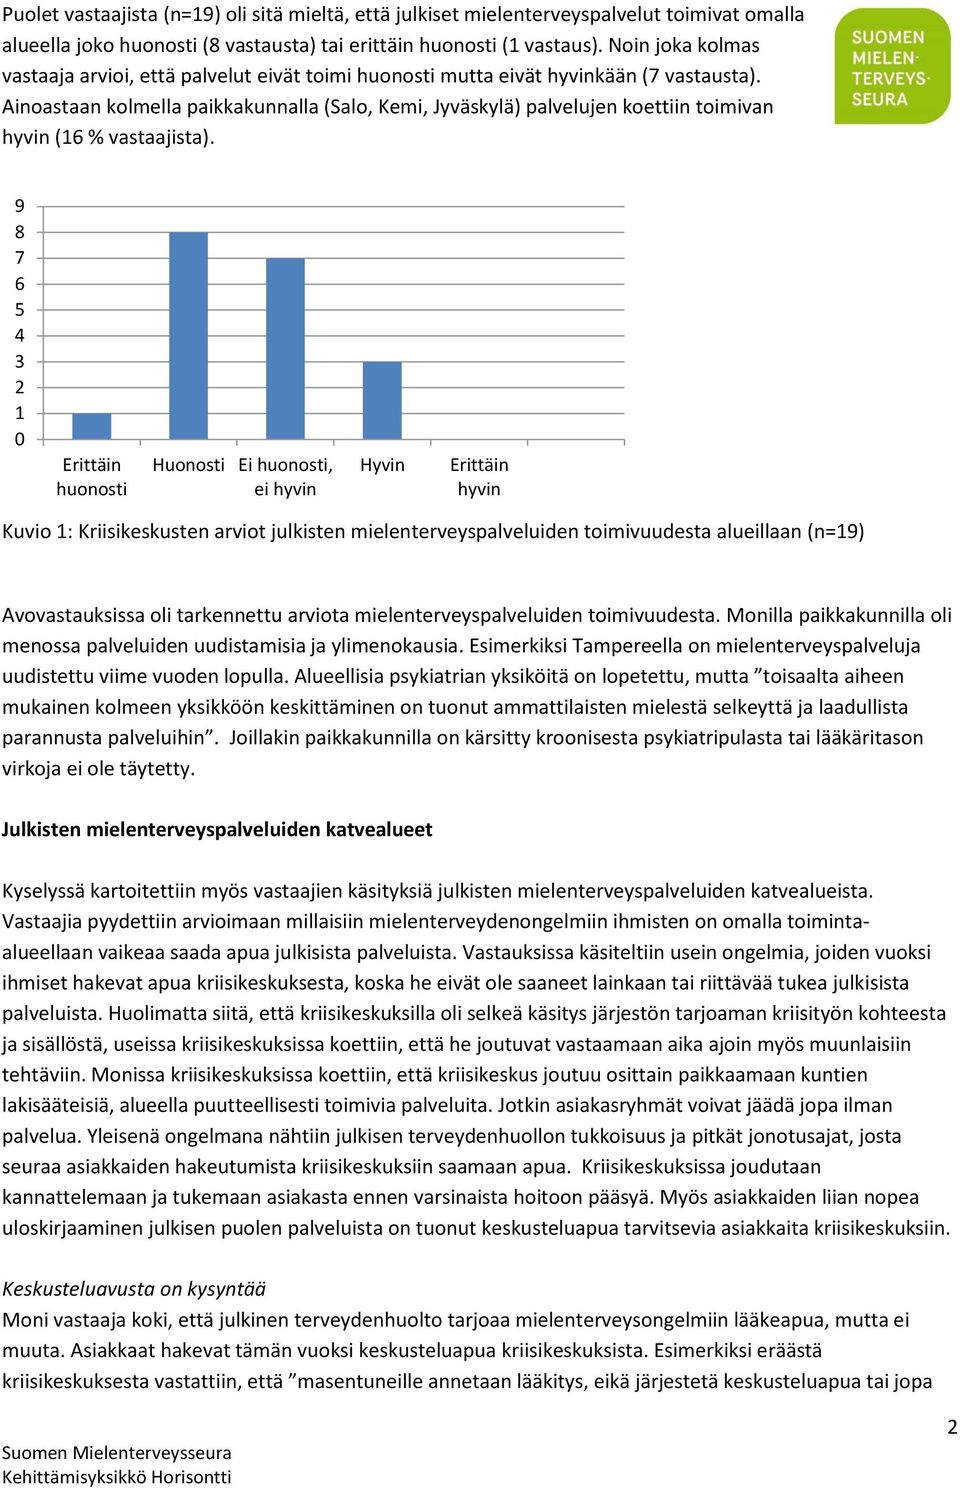 Ainoastaan kolmella paikkakunnalla (Salo, Kemi, Jyväskylä) palvelujen koettiin toimivan hyvin (16 % vastaajista).